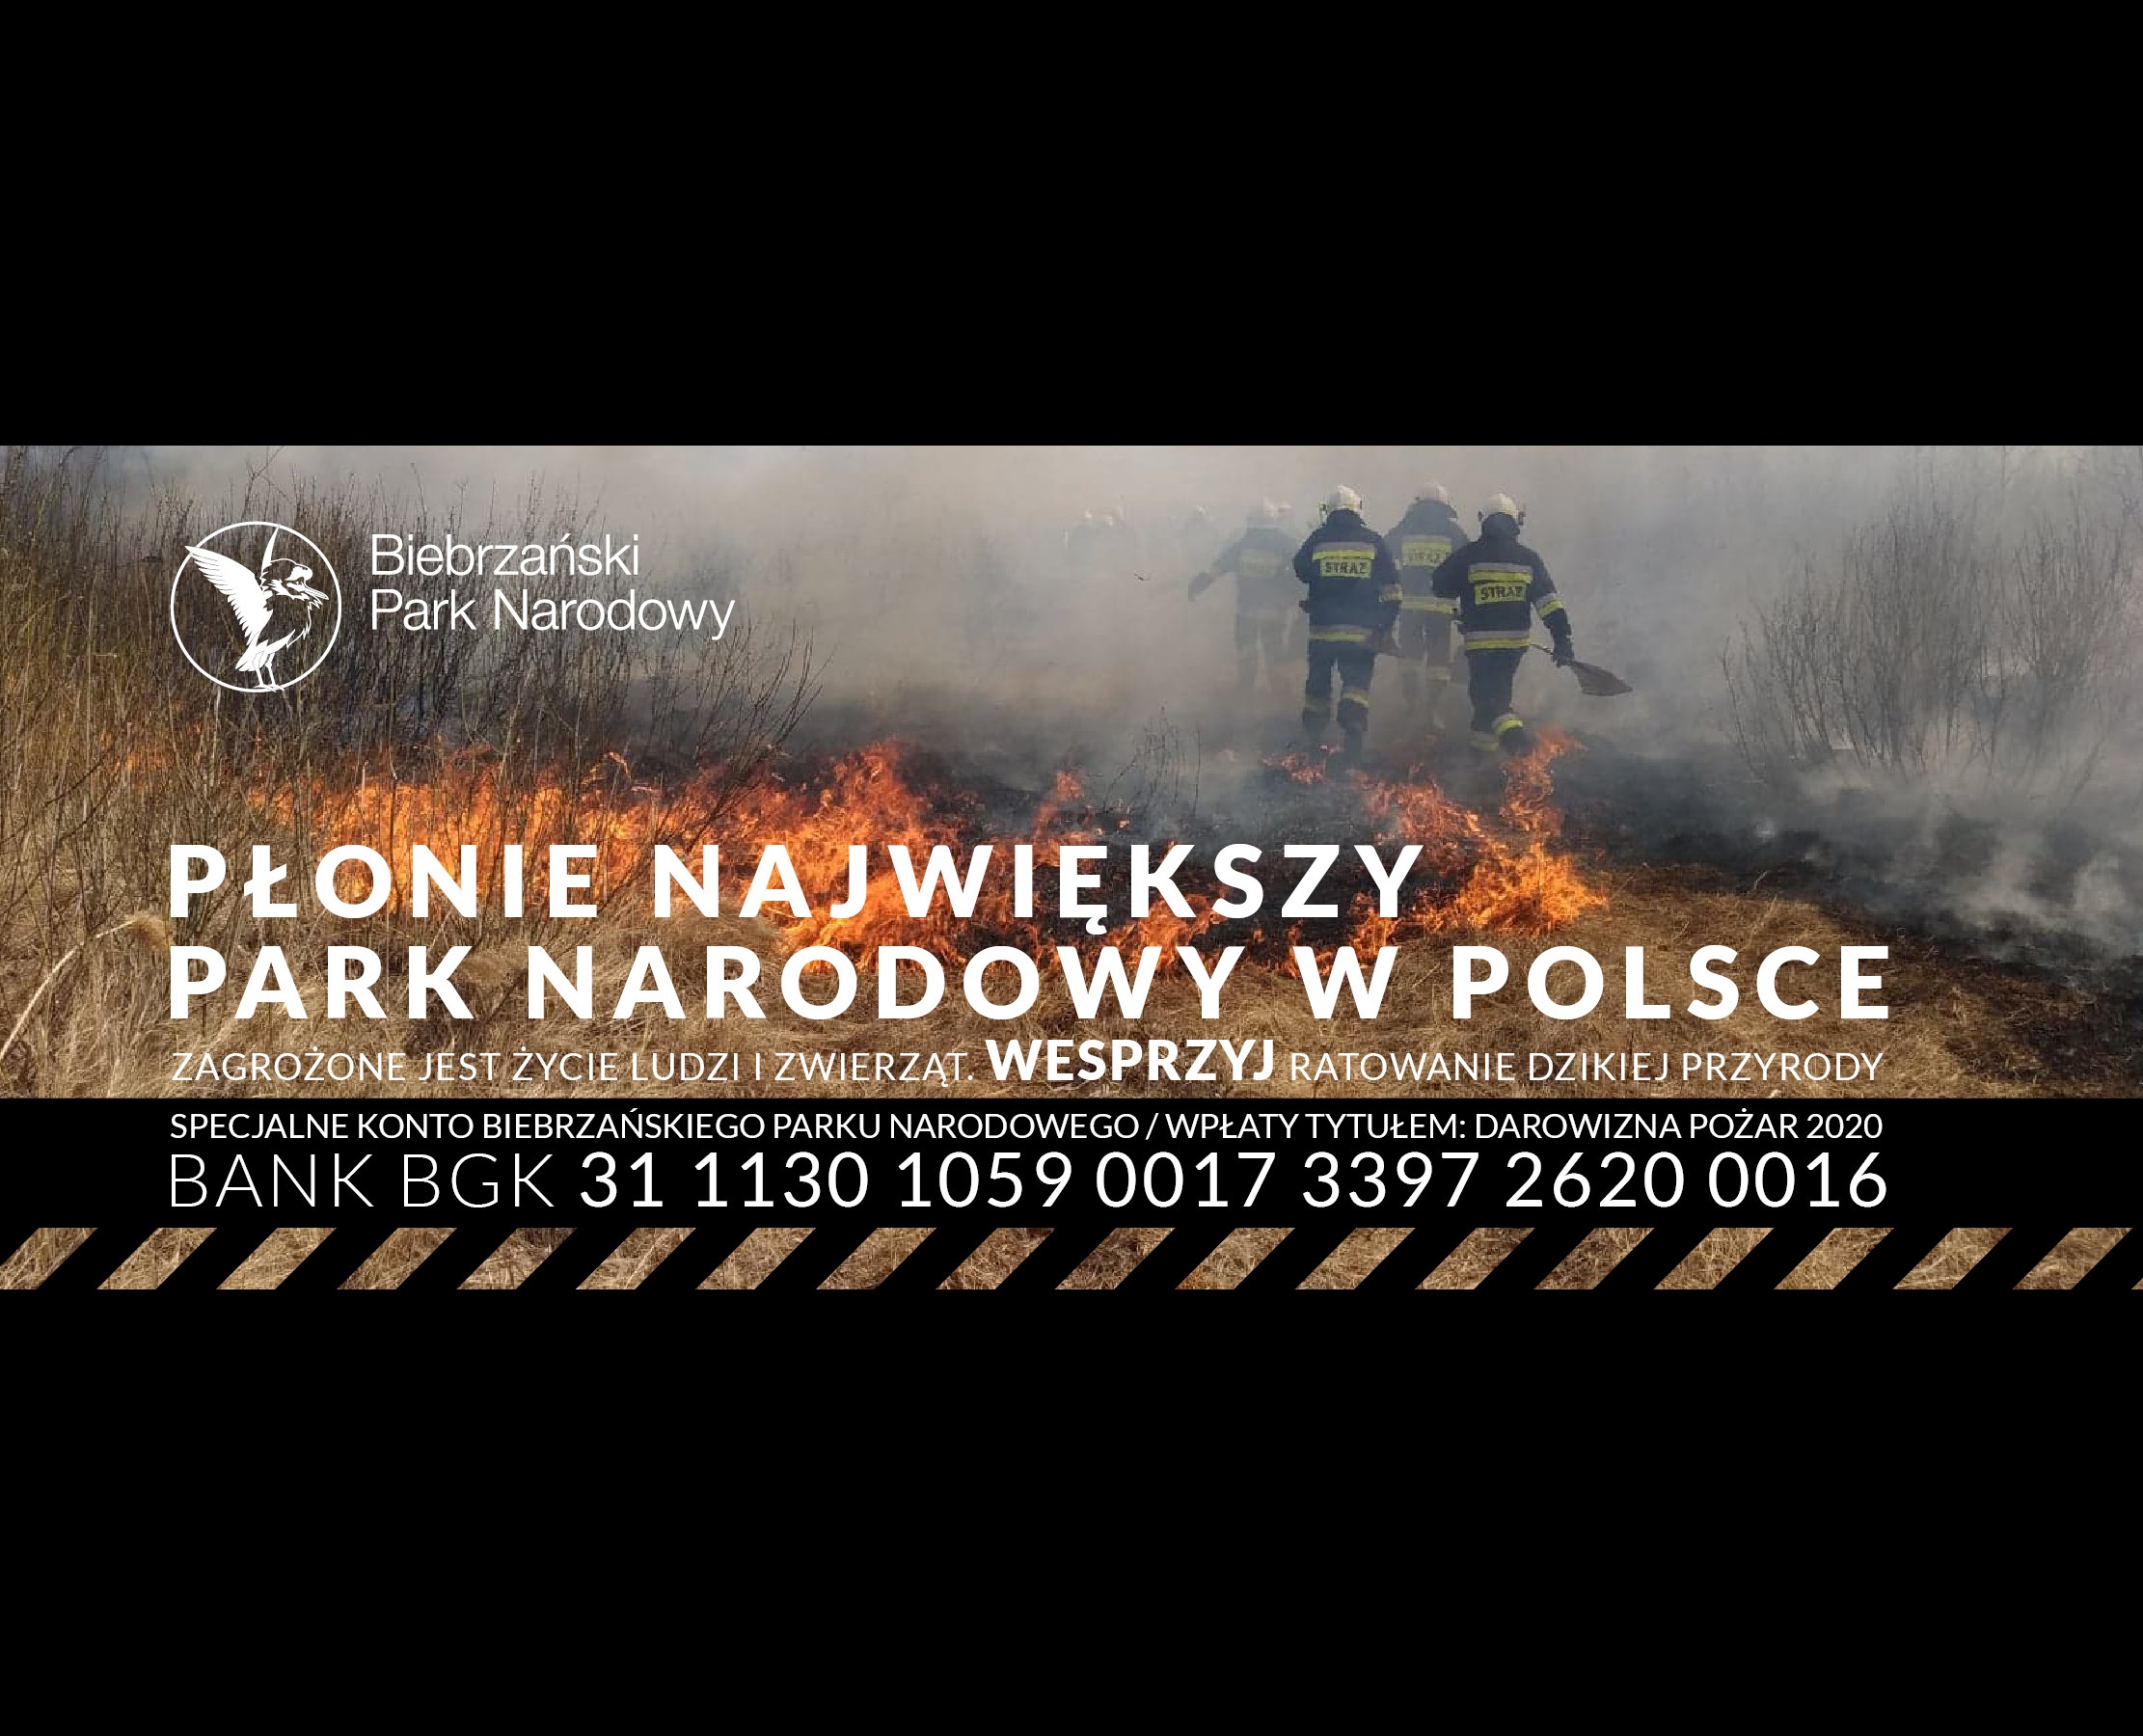 Wypalanie traw przyczyną pożaru Biebrzańskiego Parku Narodowego